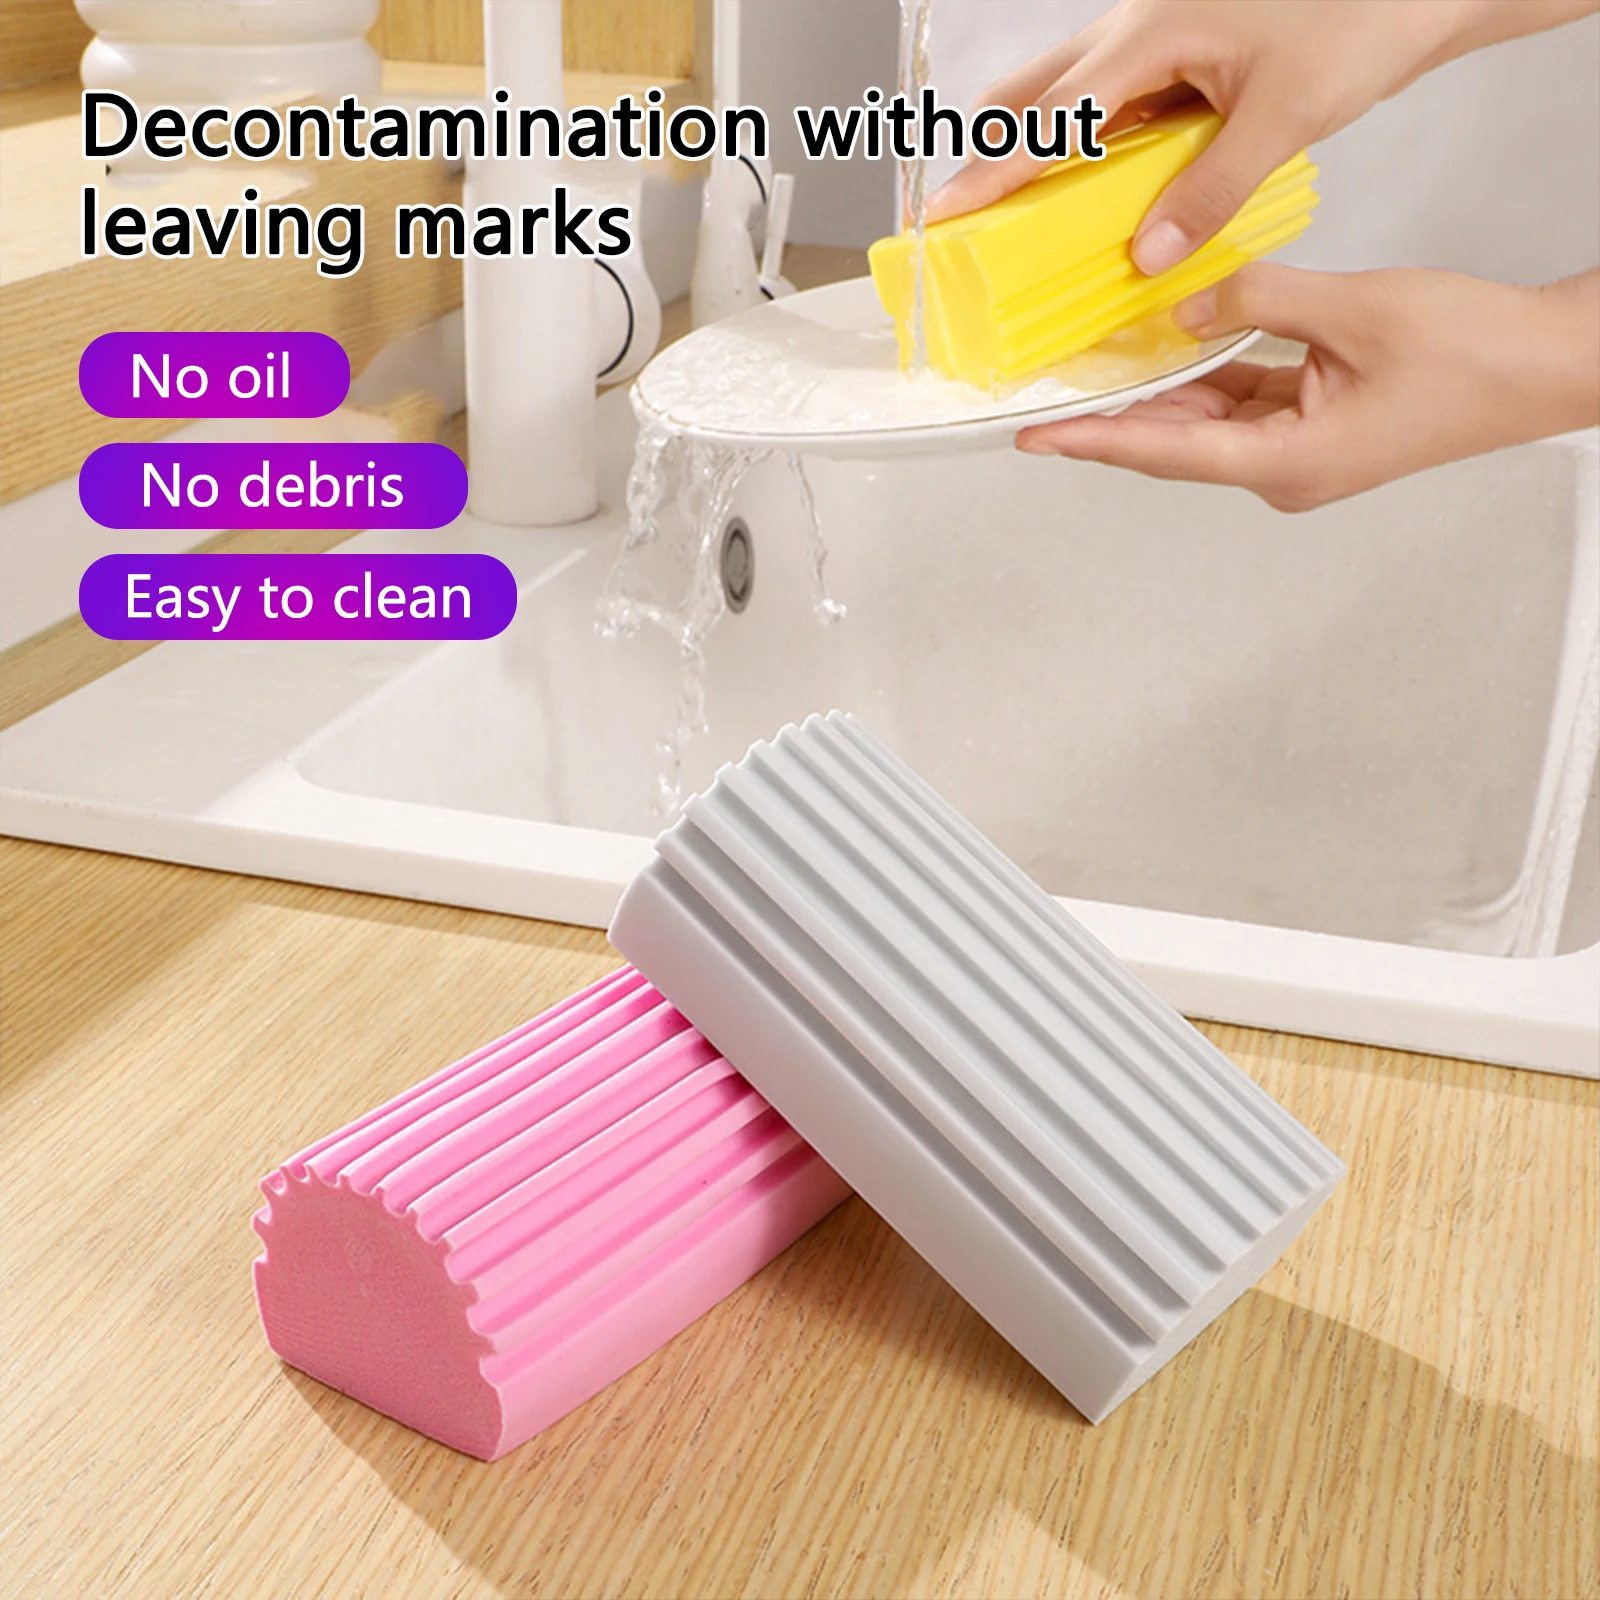 https://ae01.alicdn.com/kf/Scfb924181a4c4eb58339a6b1b8cf585bg/Magical-Dust-Cleaning-Sponges-PVA-Sponge-Damp-Clean-Duster-Sponge-Multifunctional-Household-Sponge-Cleaning-Brush-Accessories.jpg